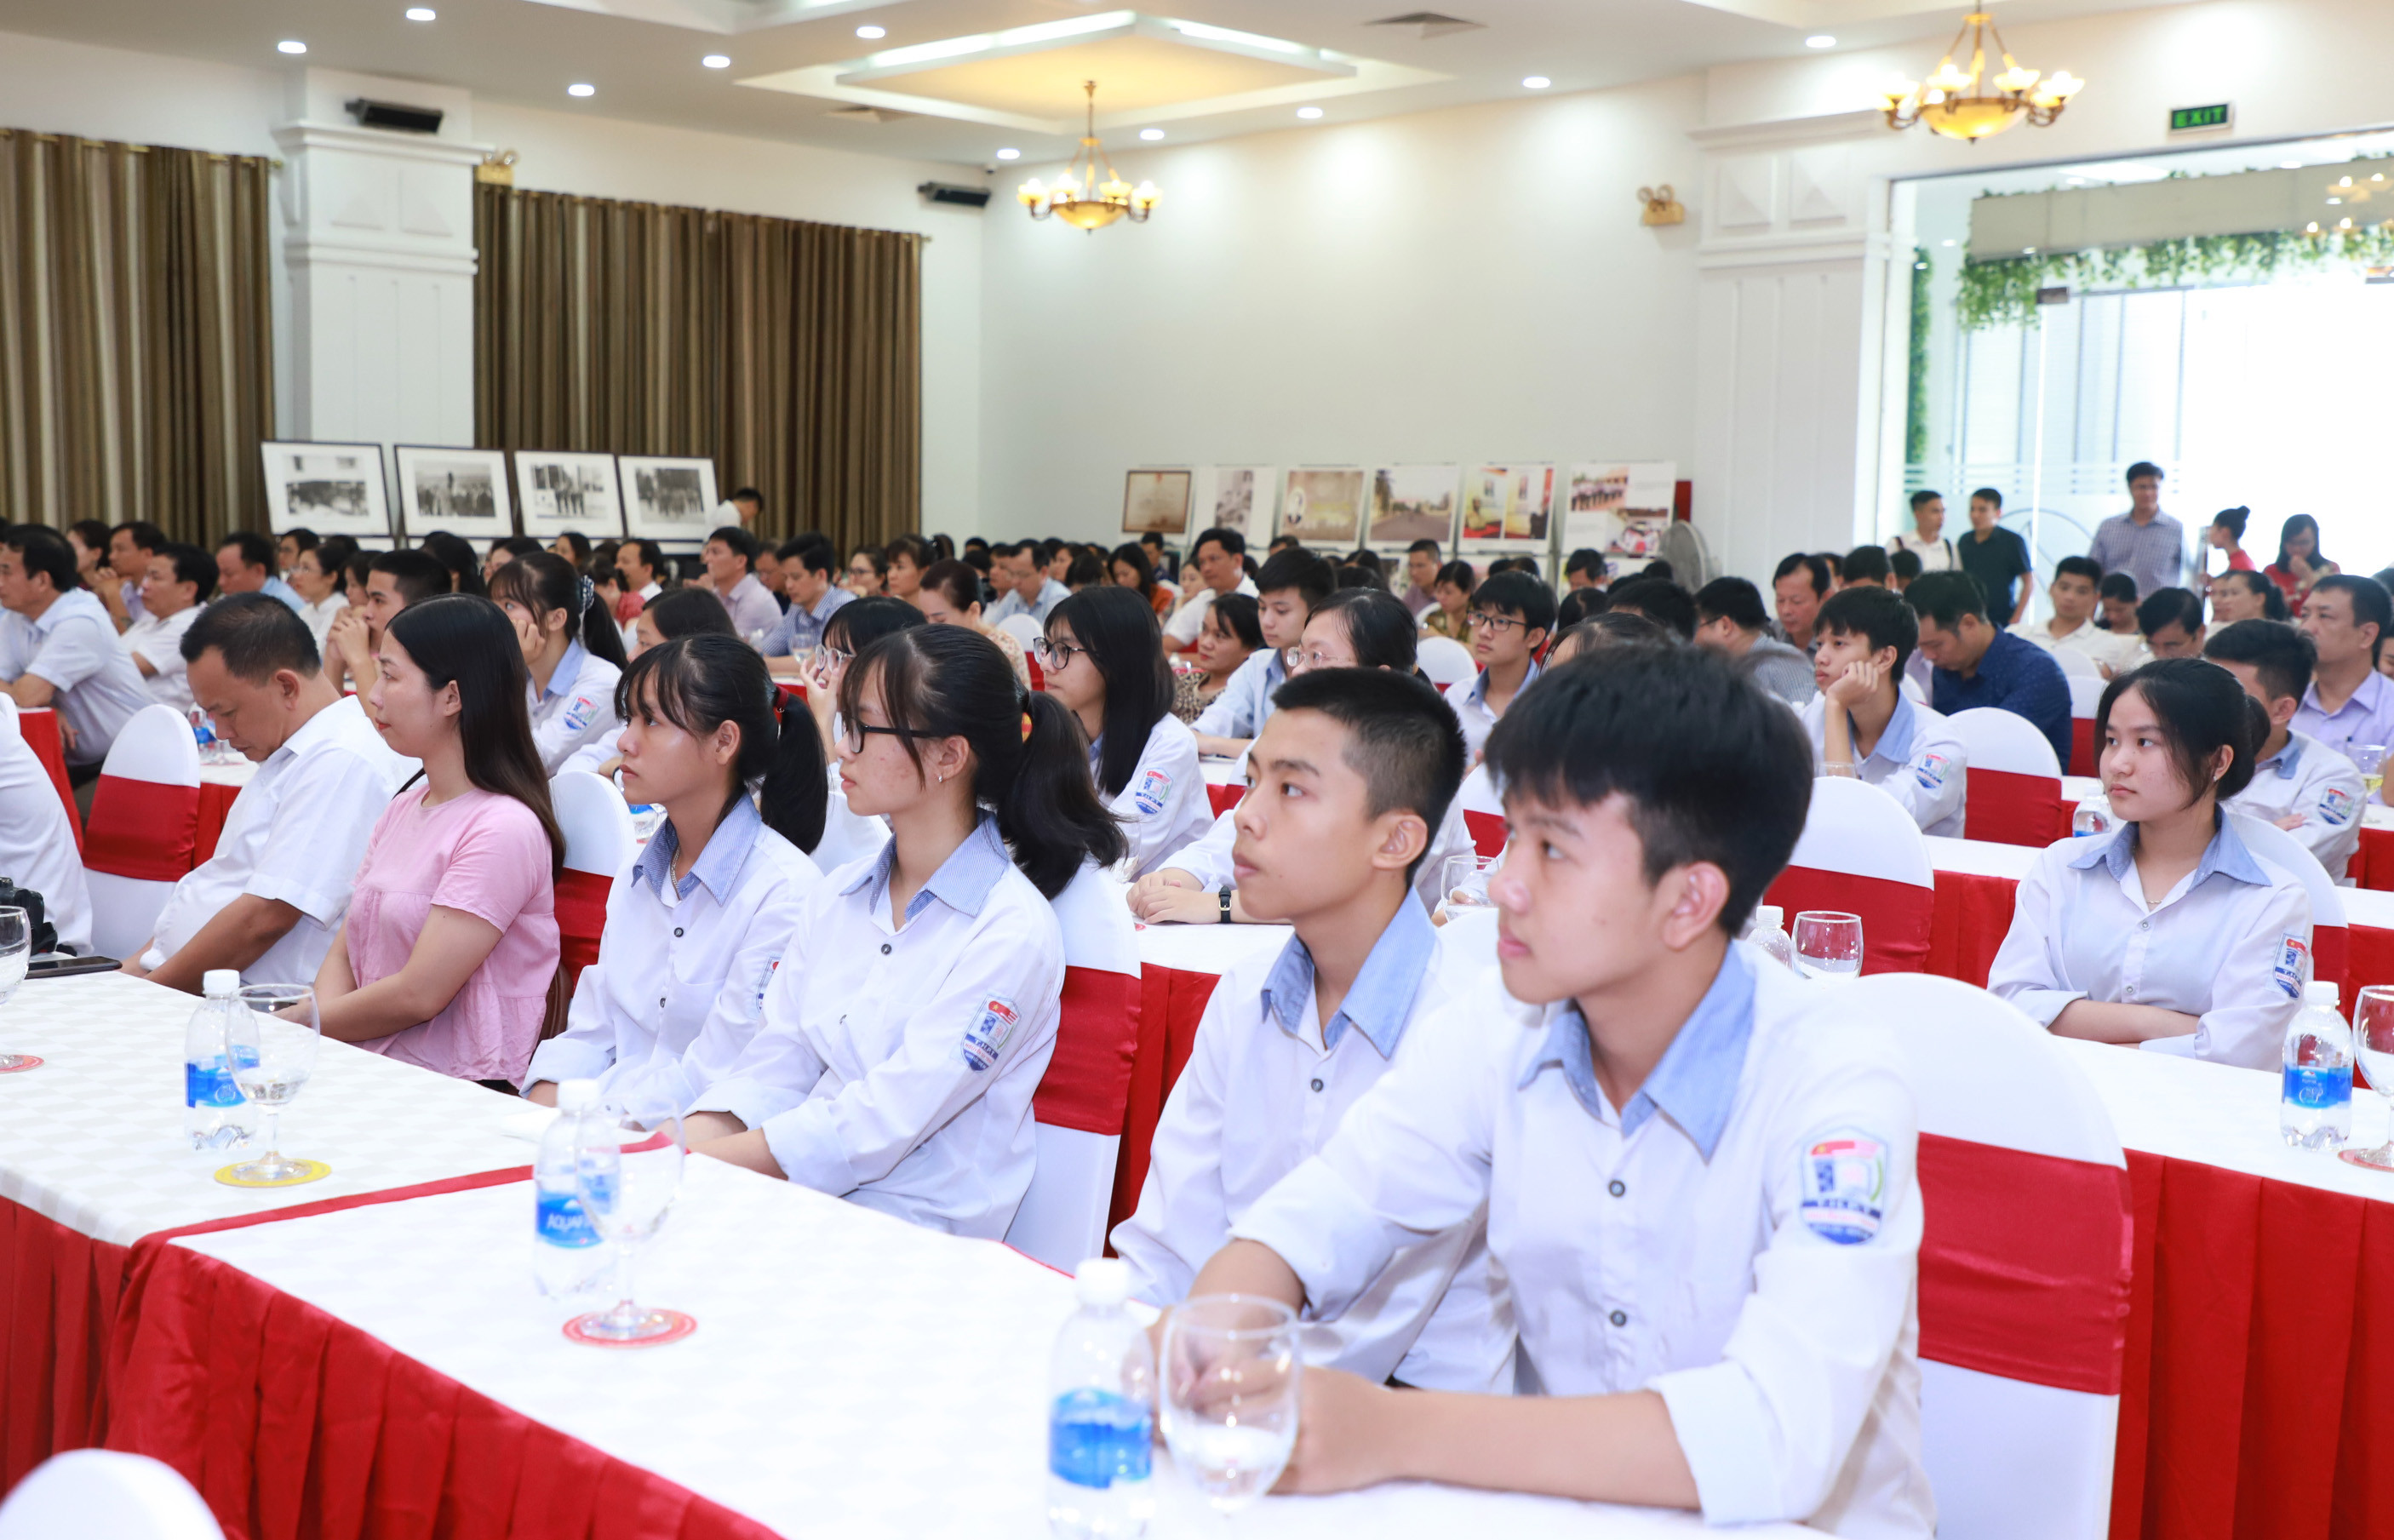 Các học sinh tiêu biểu của Trường THPT Nguyễn Duy Trinh dự Lễ kỷ niệm. Ảnh: Thành Duy